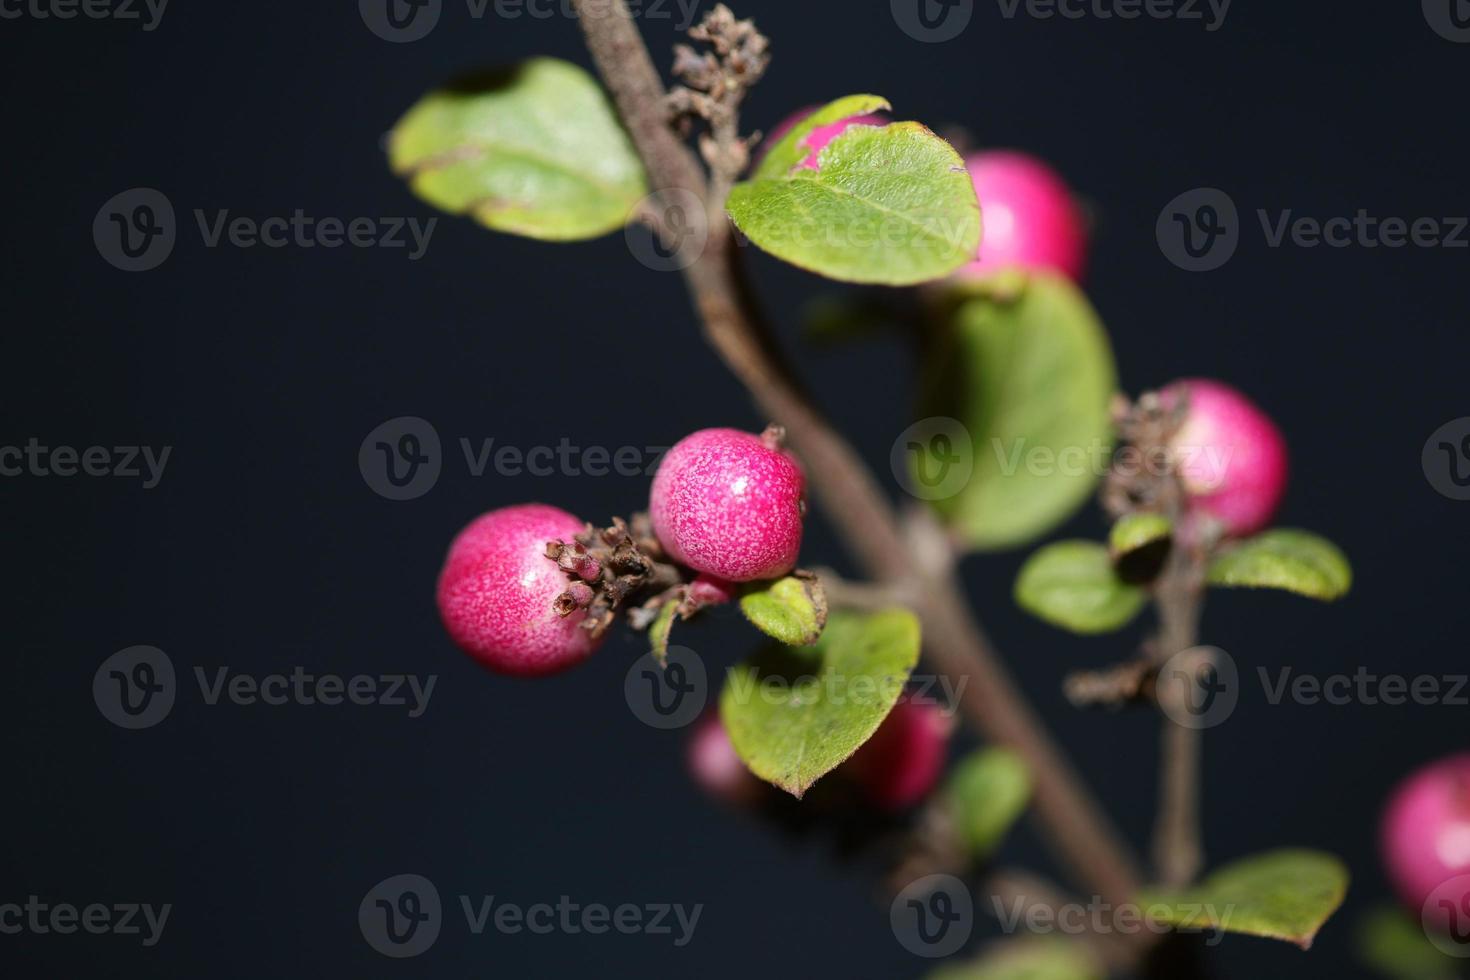 wilde bloem fruit close-up botanisch achtergrond symphoricarpos orbiculatus familie caprifoliaceae groot formaat afdrukken van hoge kwaliteit foto